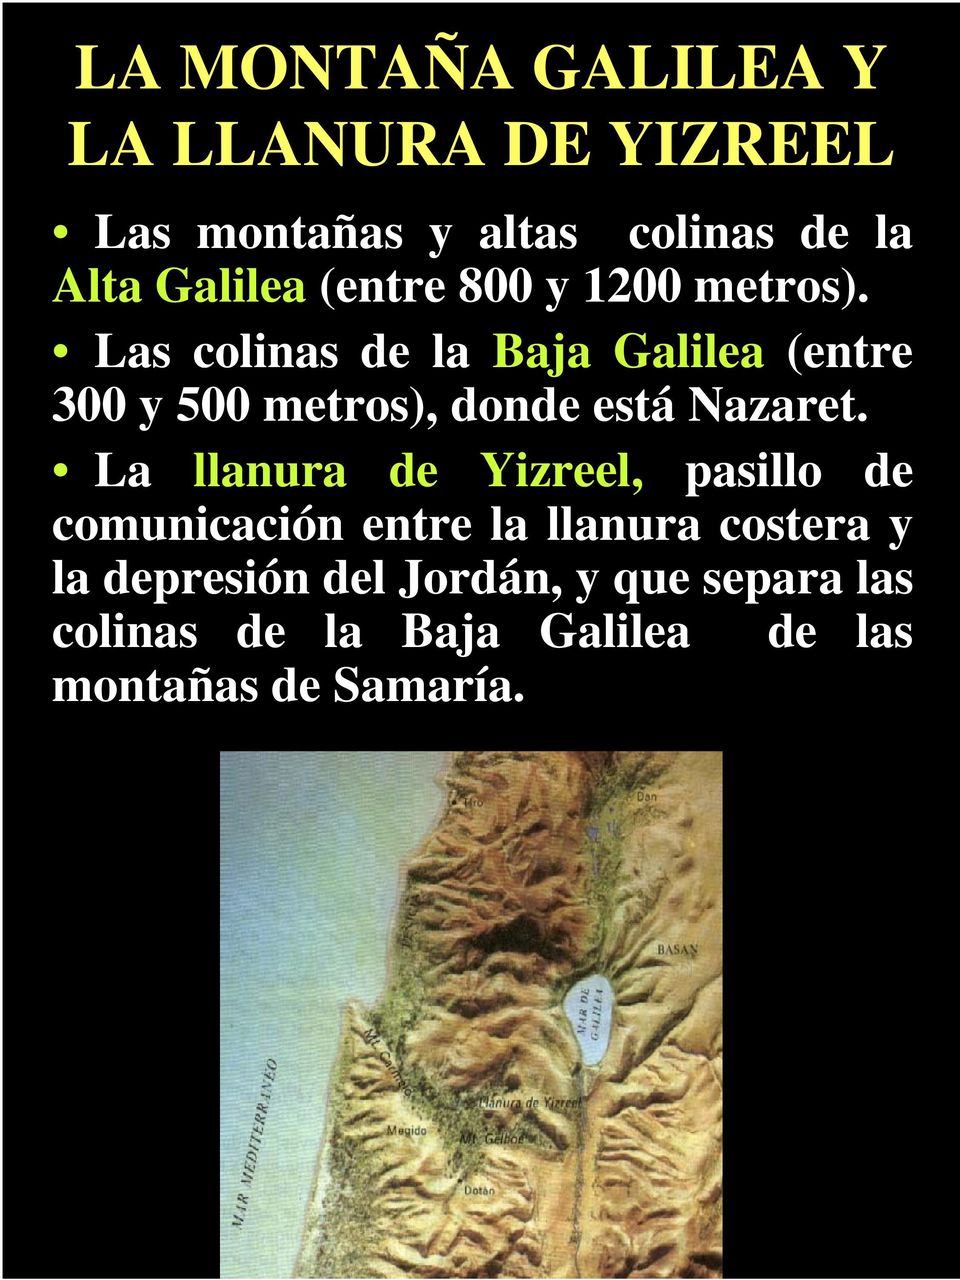 Las colinas de la Baja Galilea (entre 300 y 500 metros), donde está Nazaret.